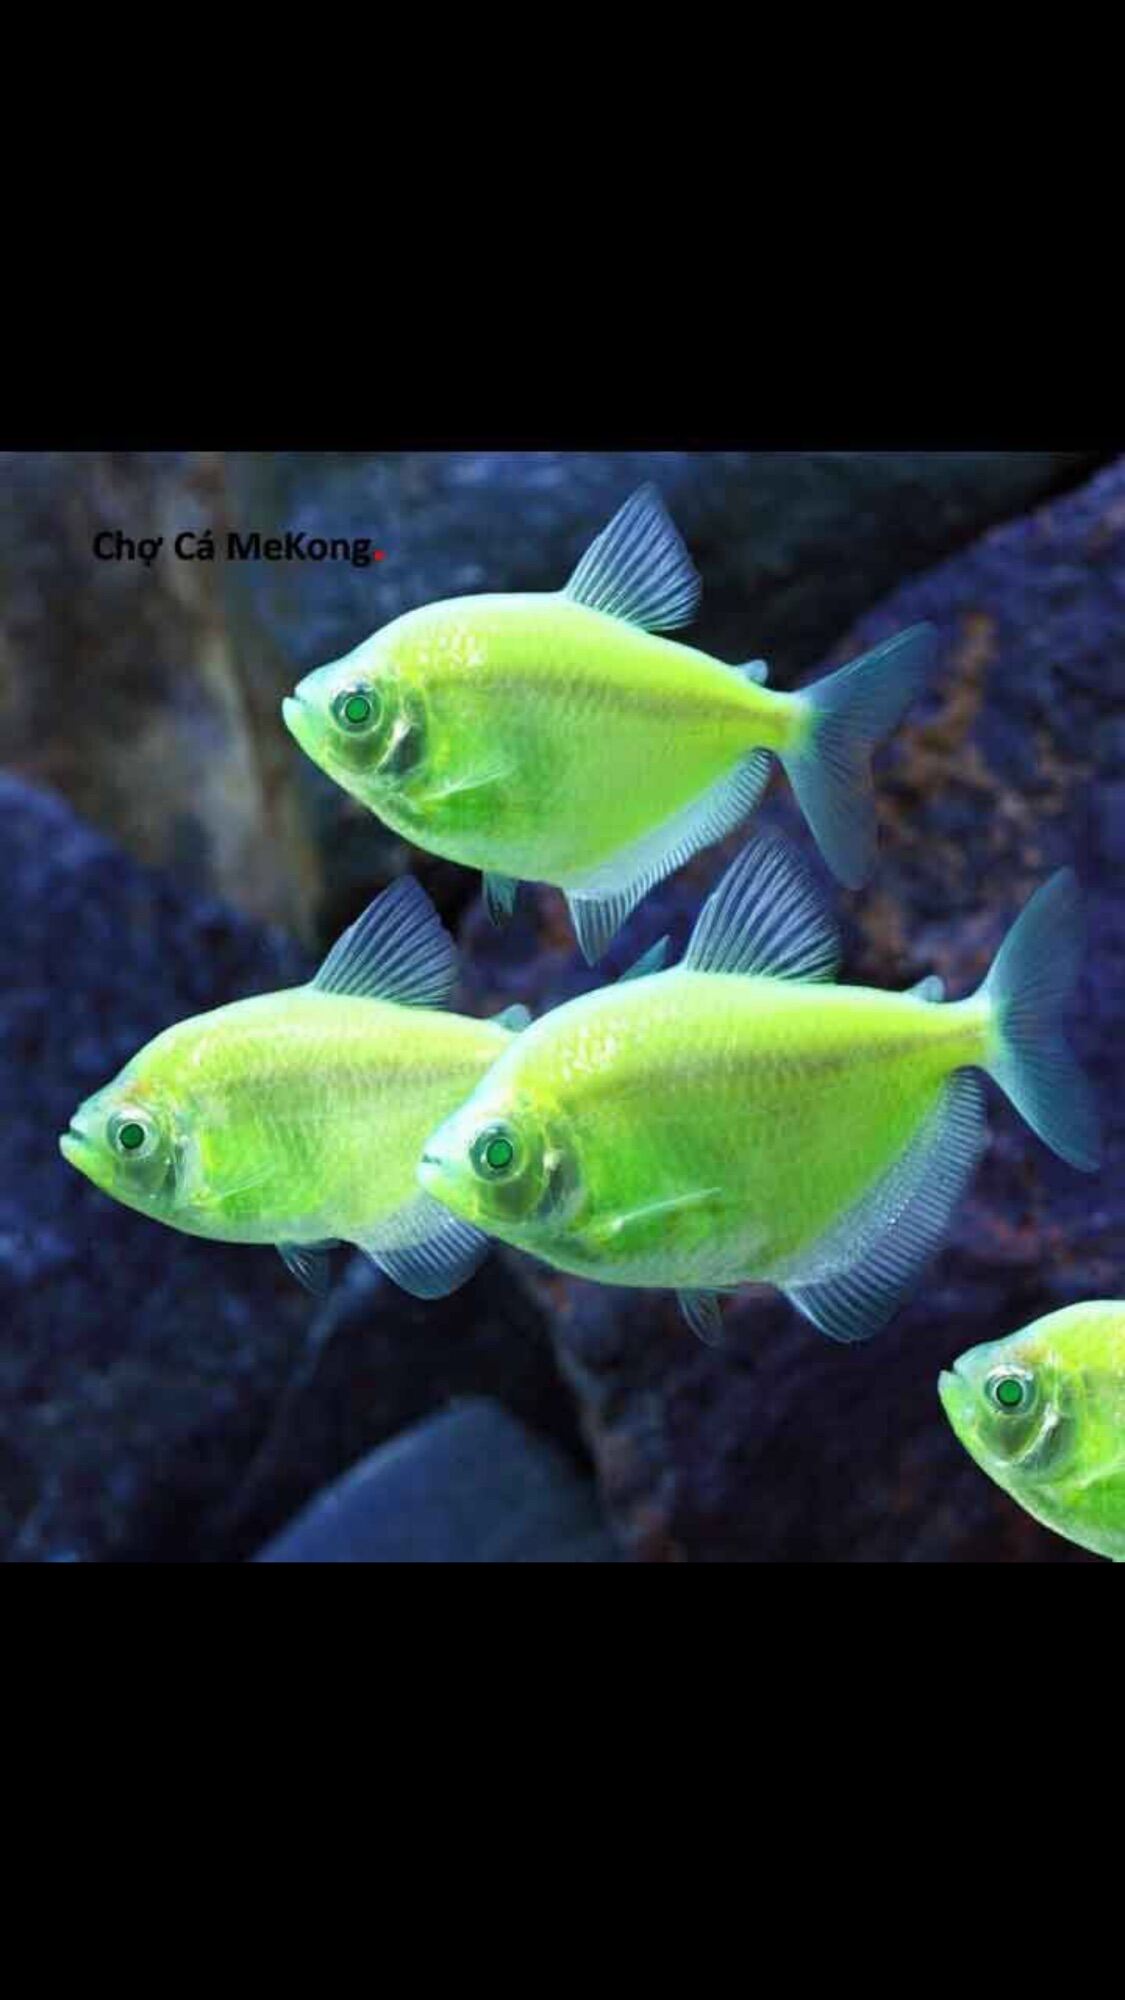 [CÁ CẢNH SỐNG] 1 con Cá bườm dạ quang màu đẹp dễ nuôi, hoàn tiền nếu có rủi ro về cá